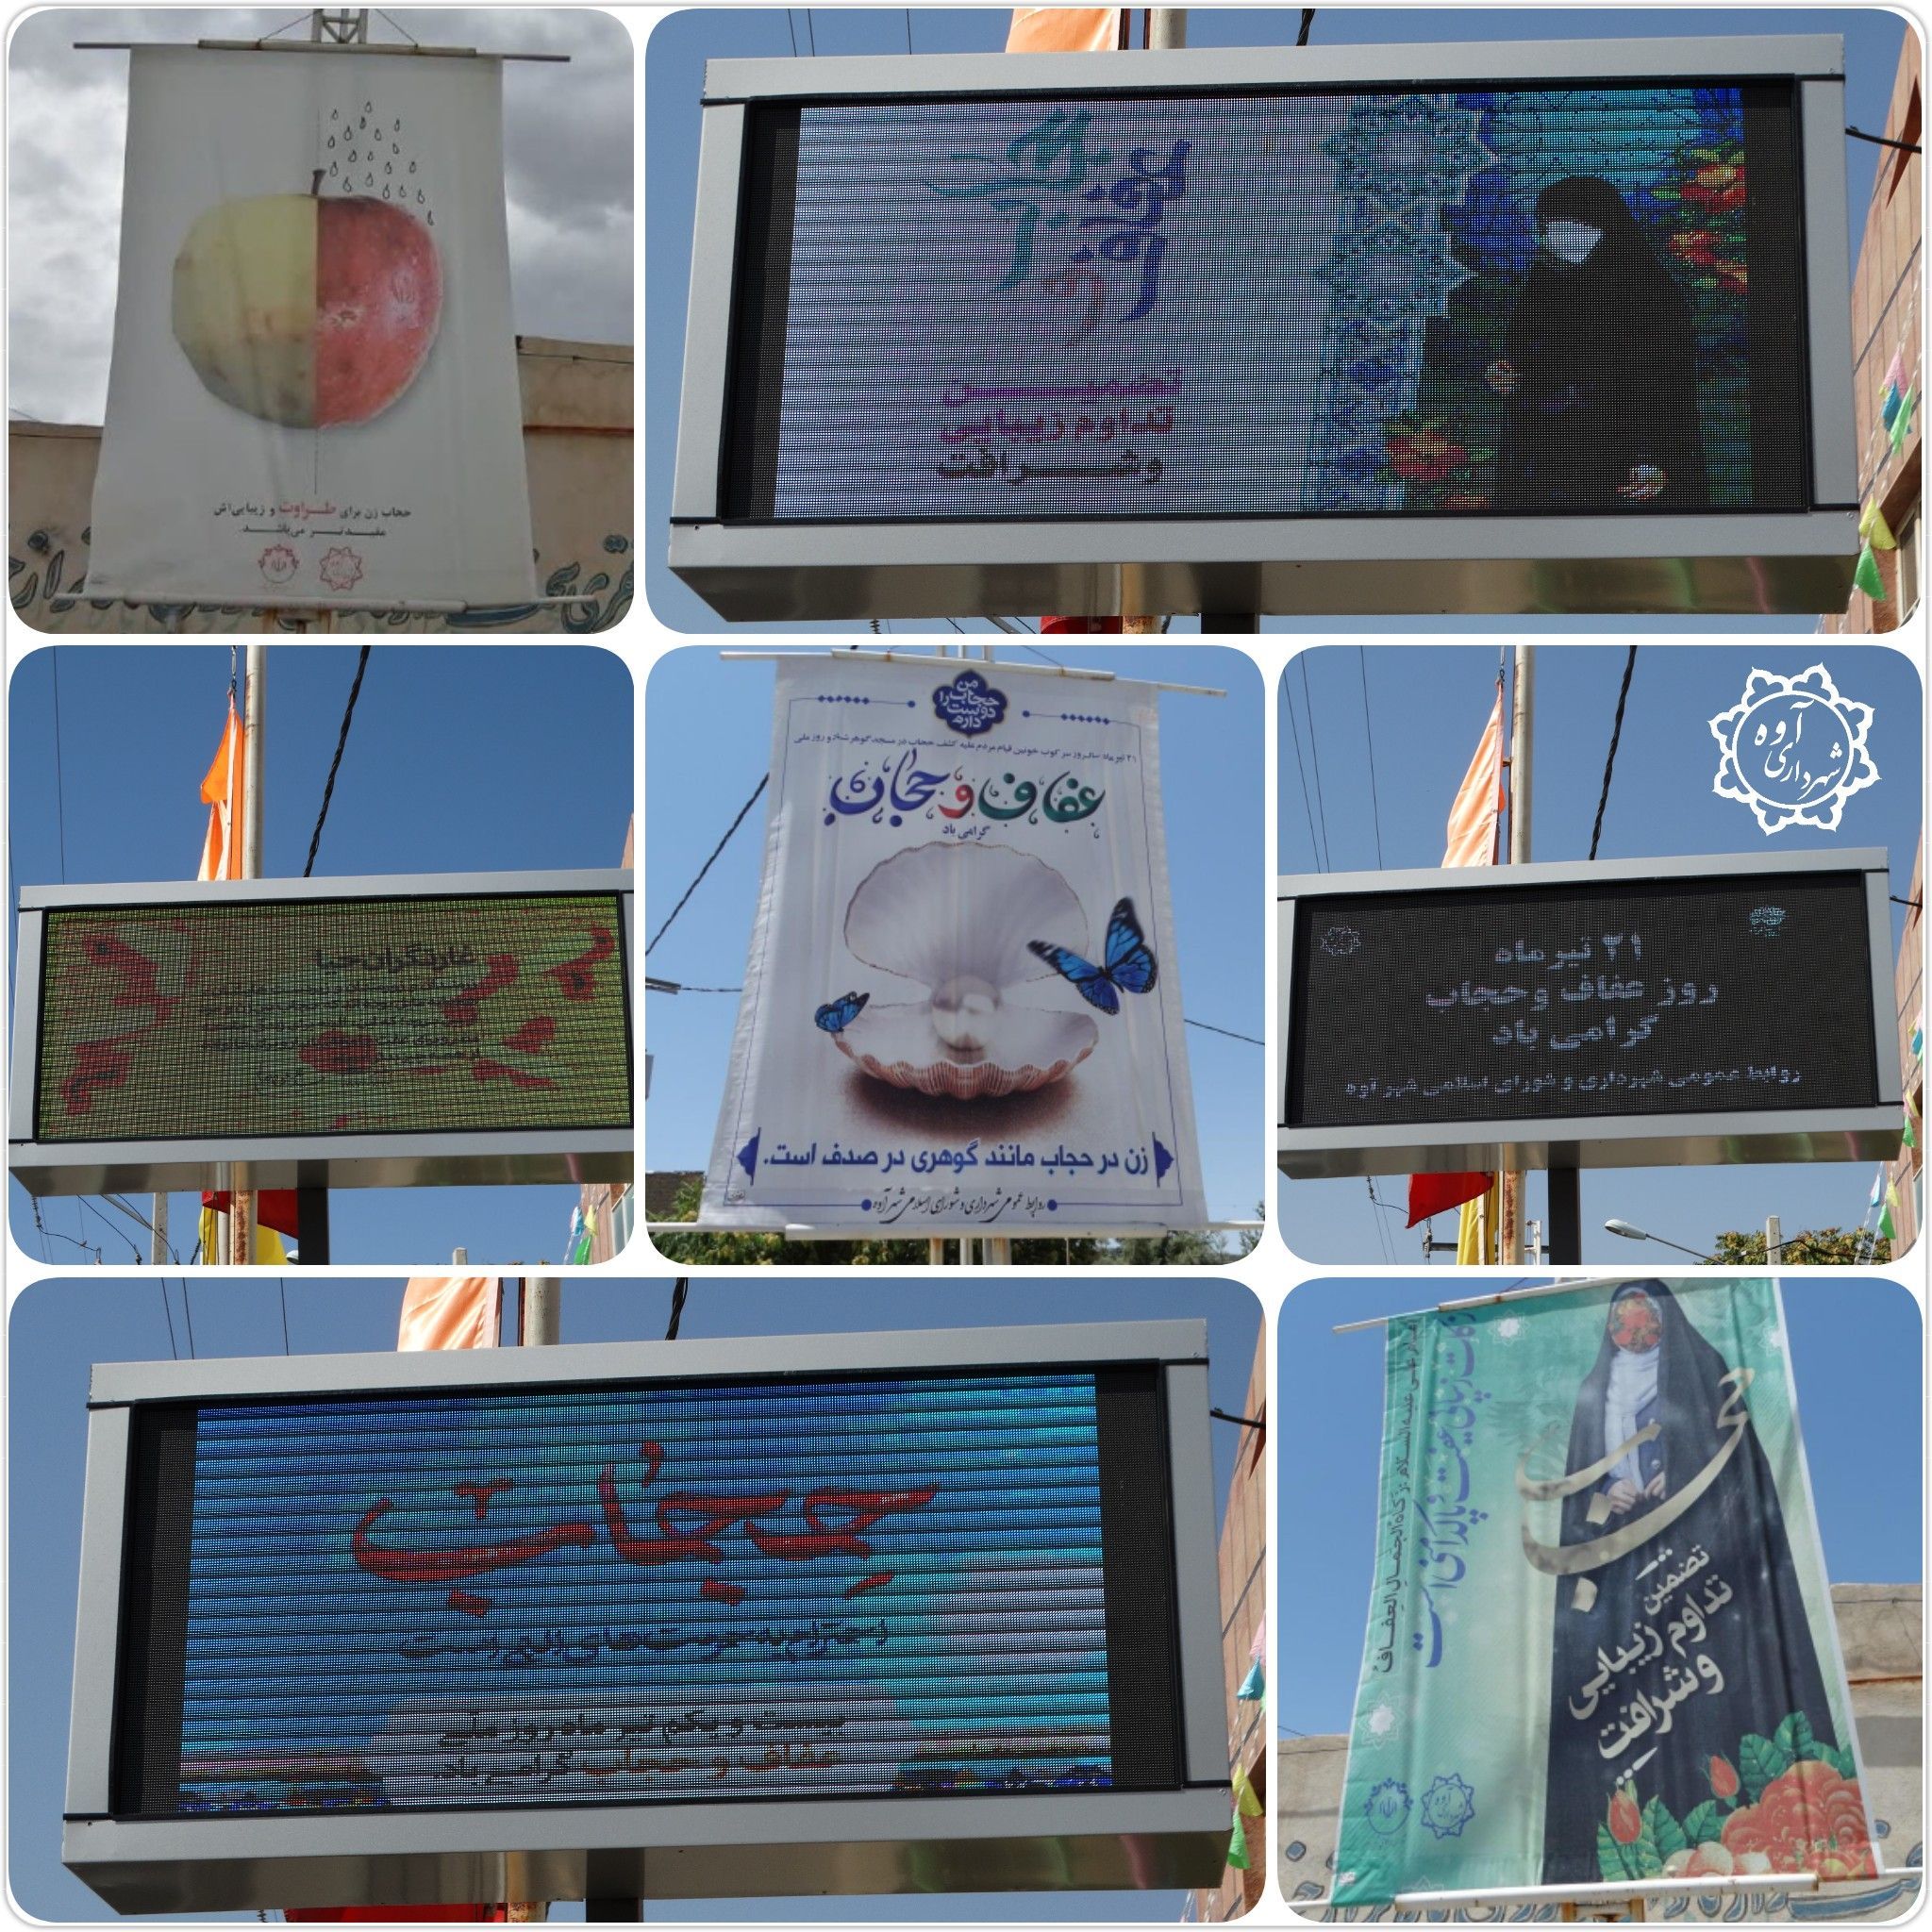  سطح شهر آوه در راستای گرامیداشت هفته عفاف و حجاب و ترویج و گسترش فرهنگ عفاف و حجاب